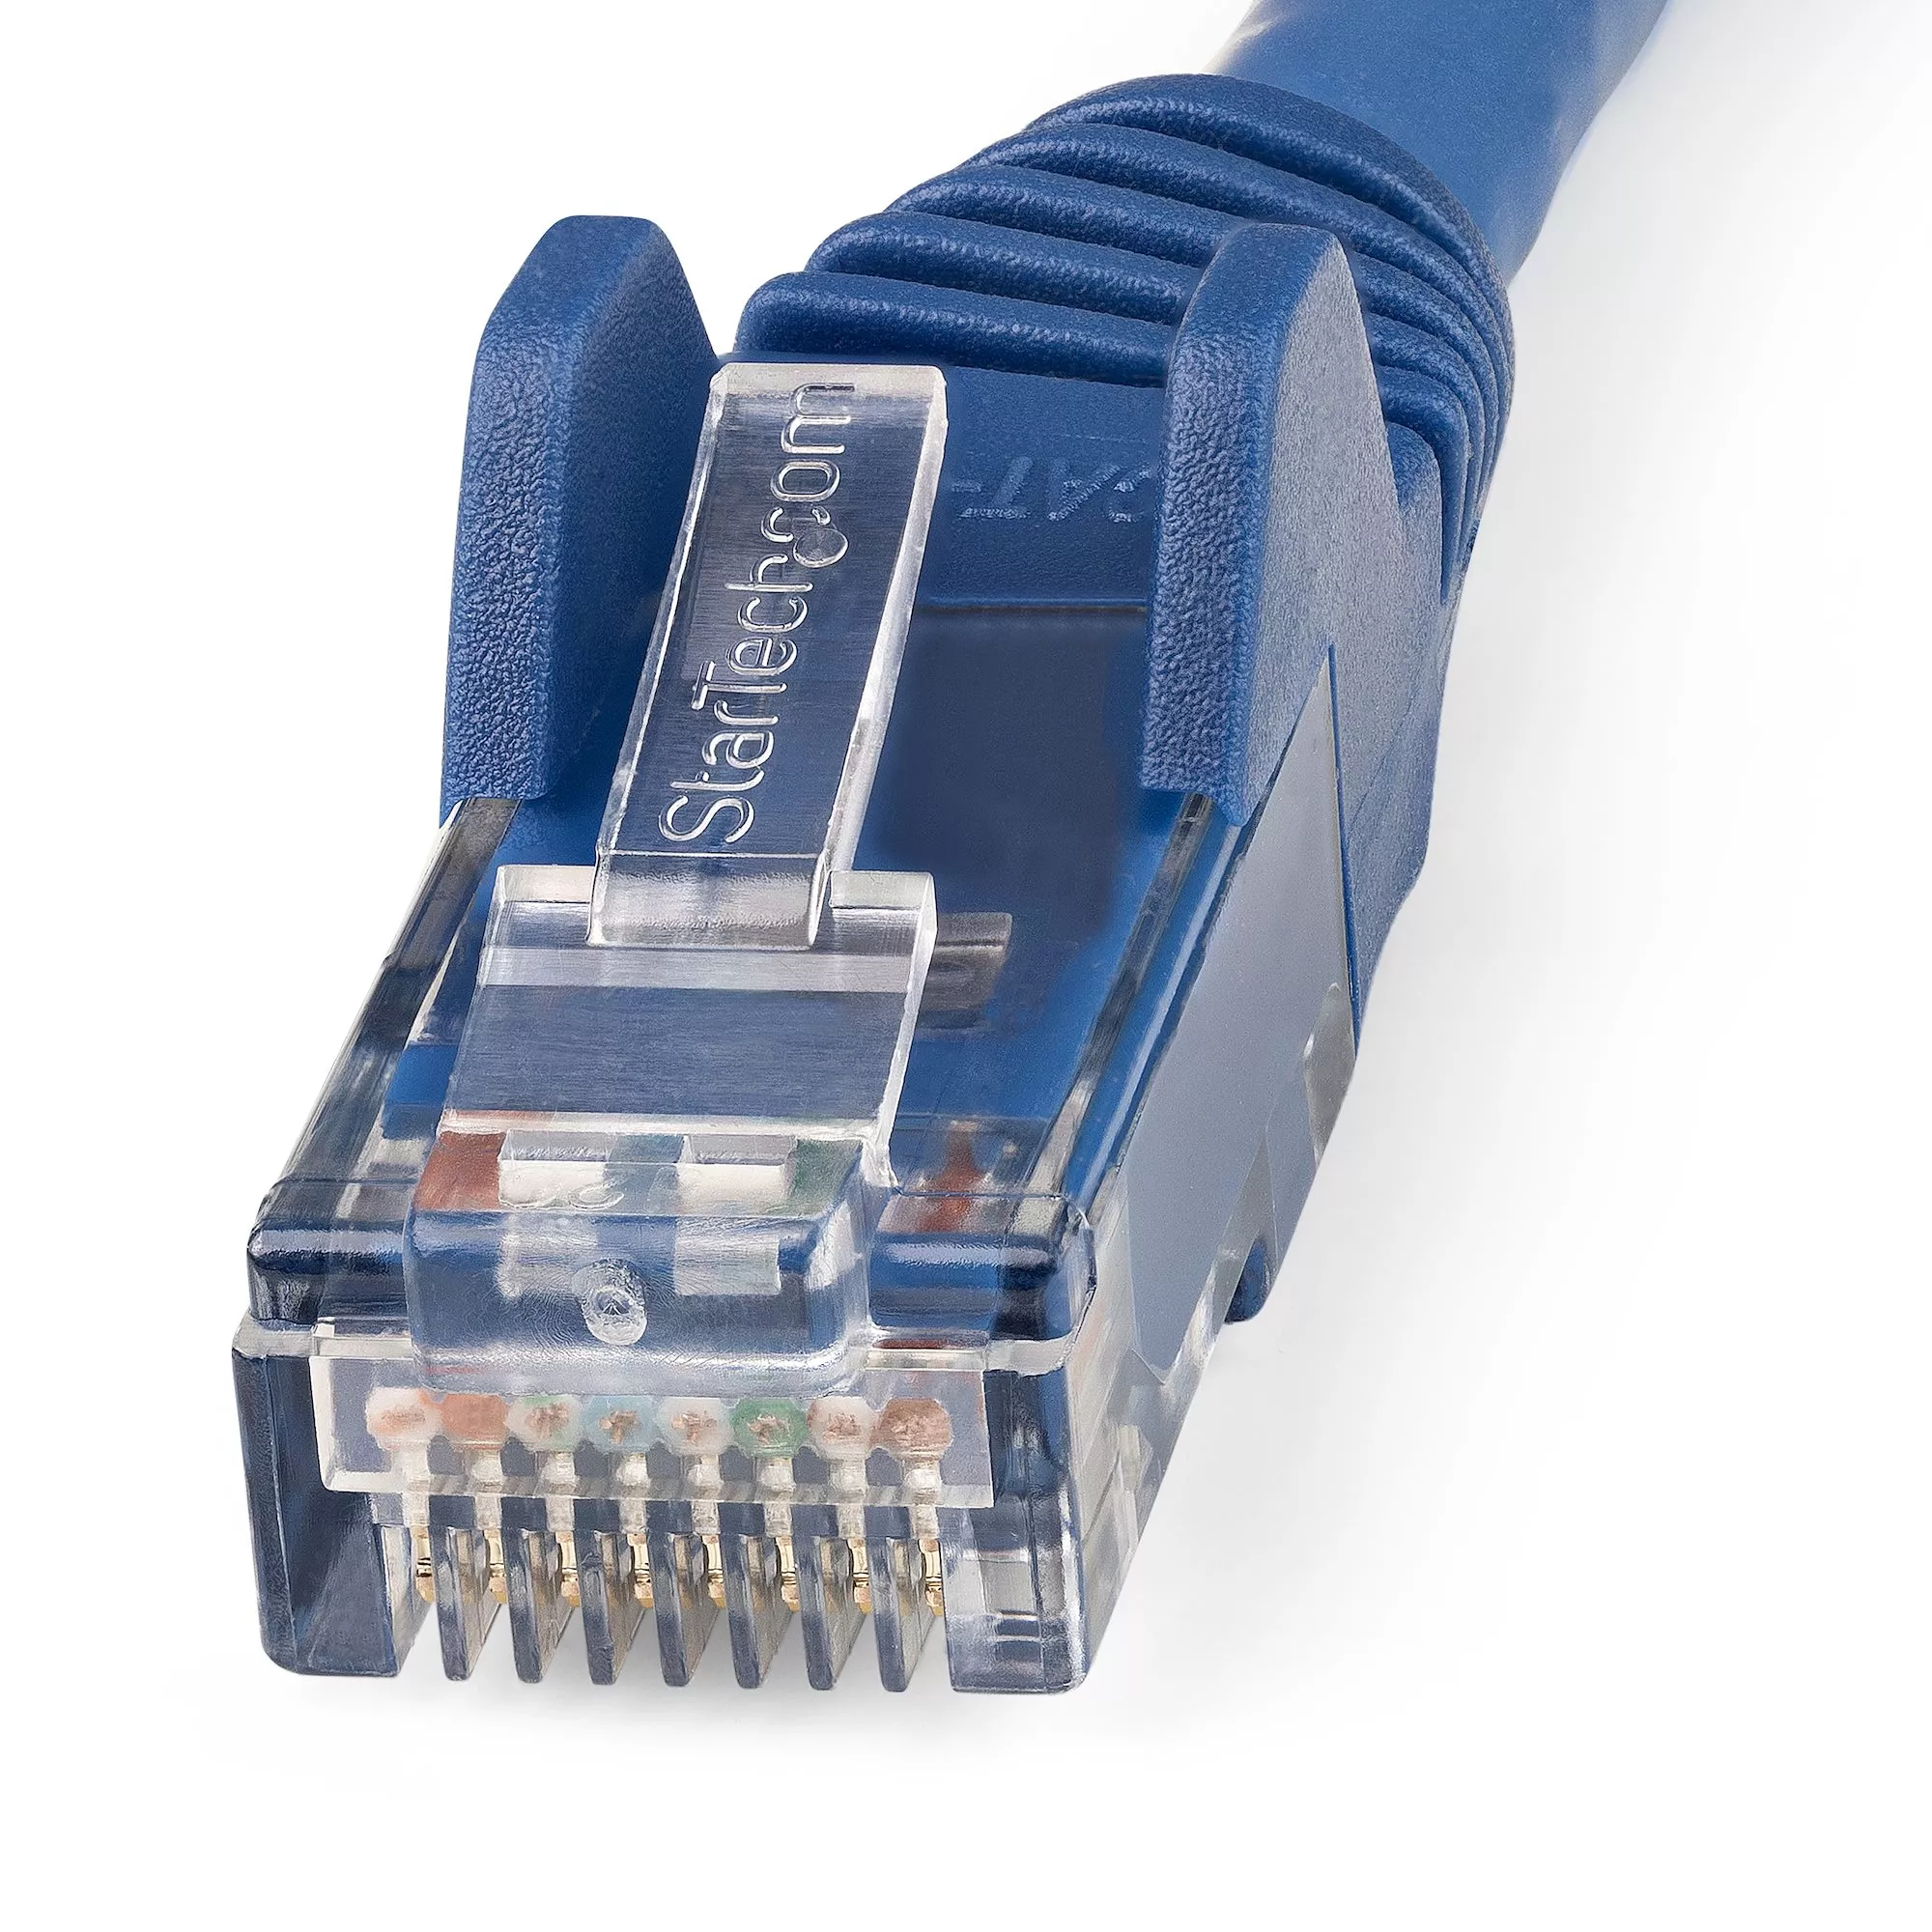 Vente StarTech.com Câble Ethernet CAT6 7m - LSZH (Low StarTech.com au meilleur prix - visuel 2